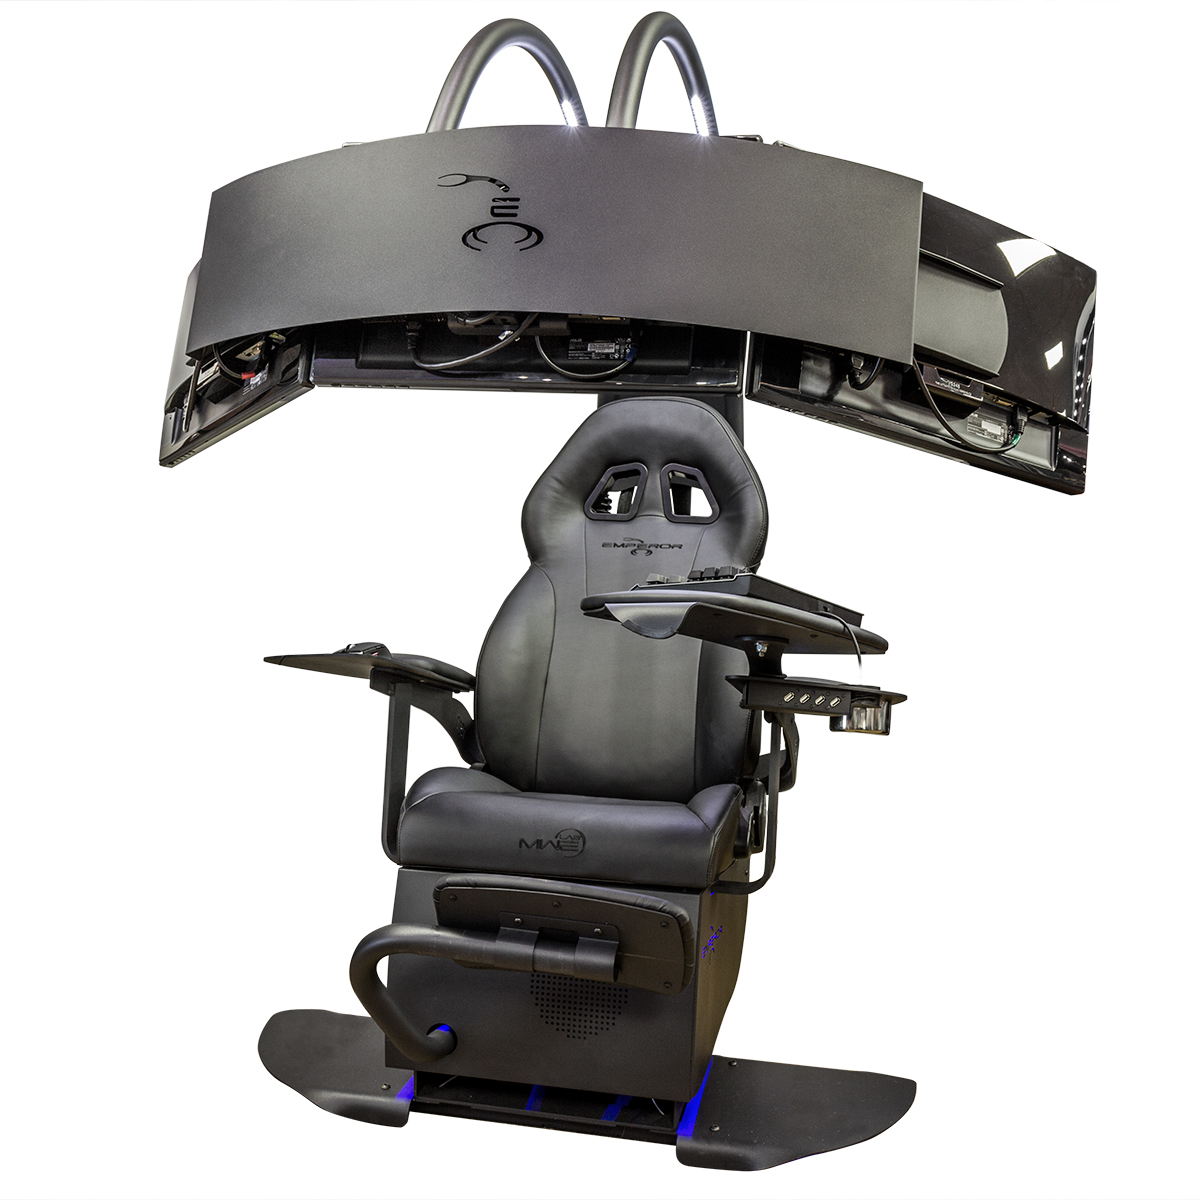 MWELAB - MWELAB Emperor 1510 Gaming / Workstation Chair - Black